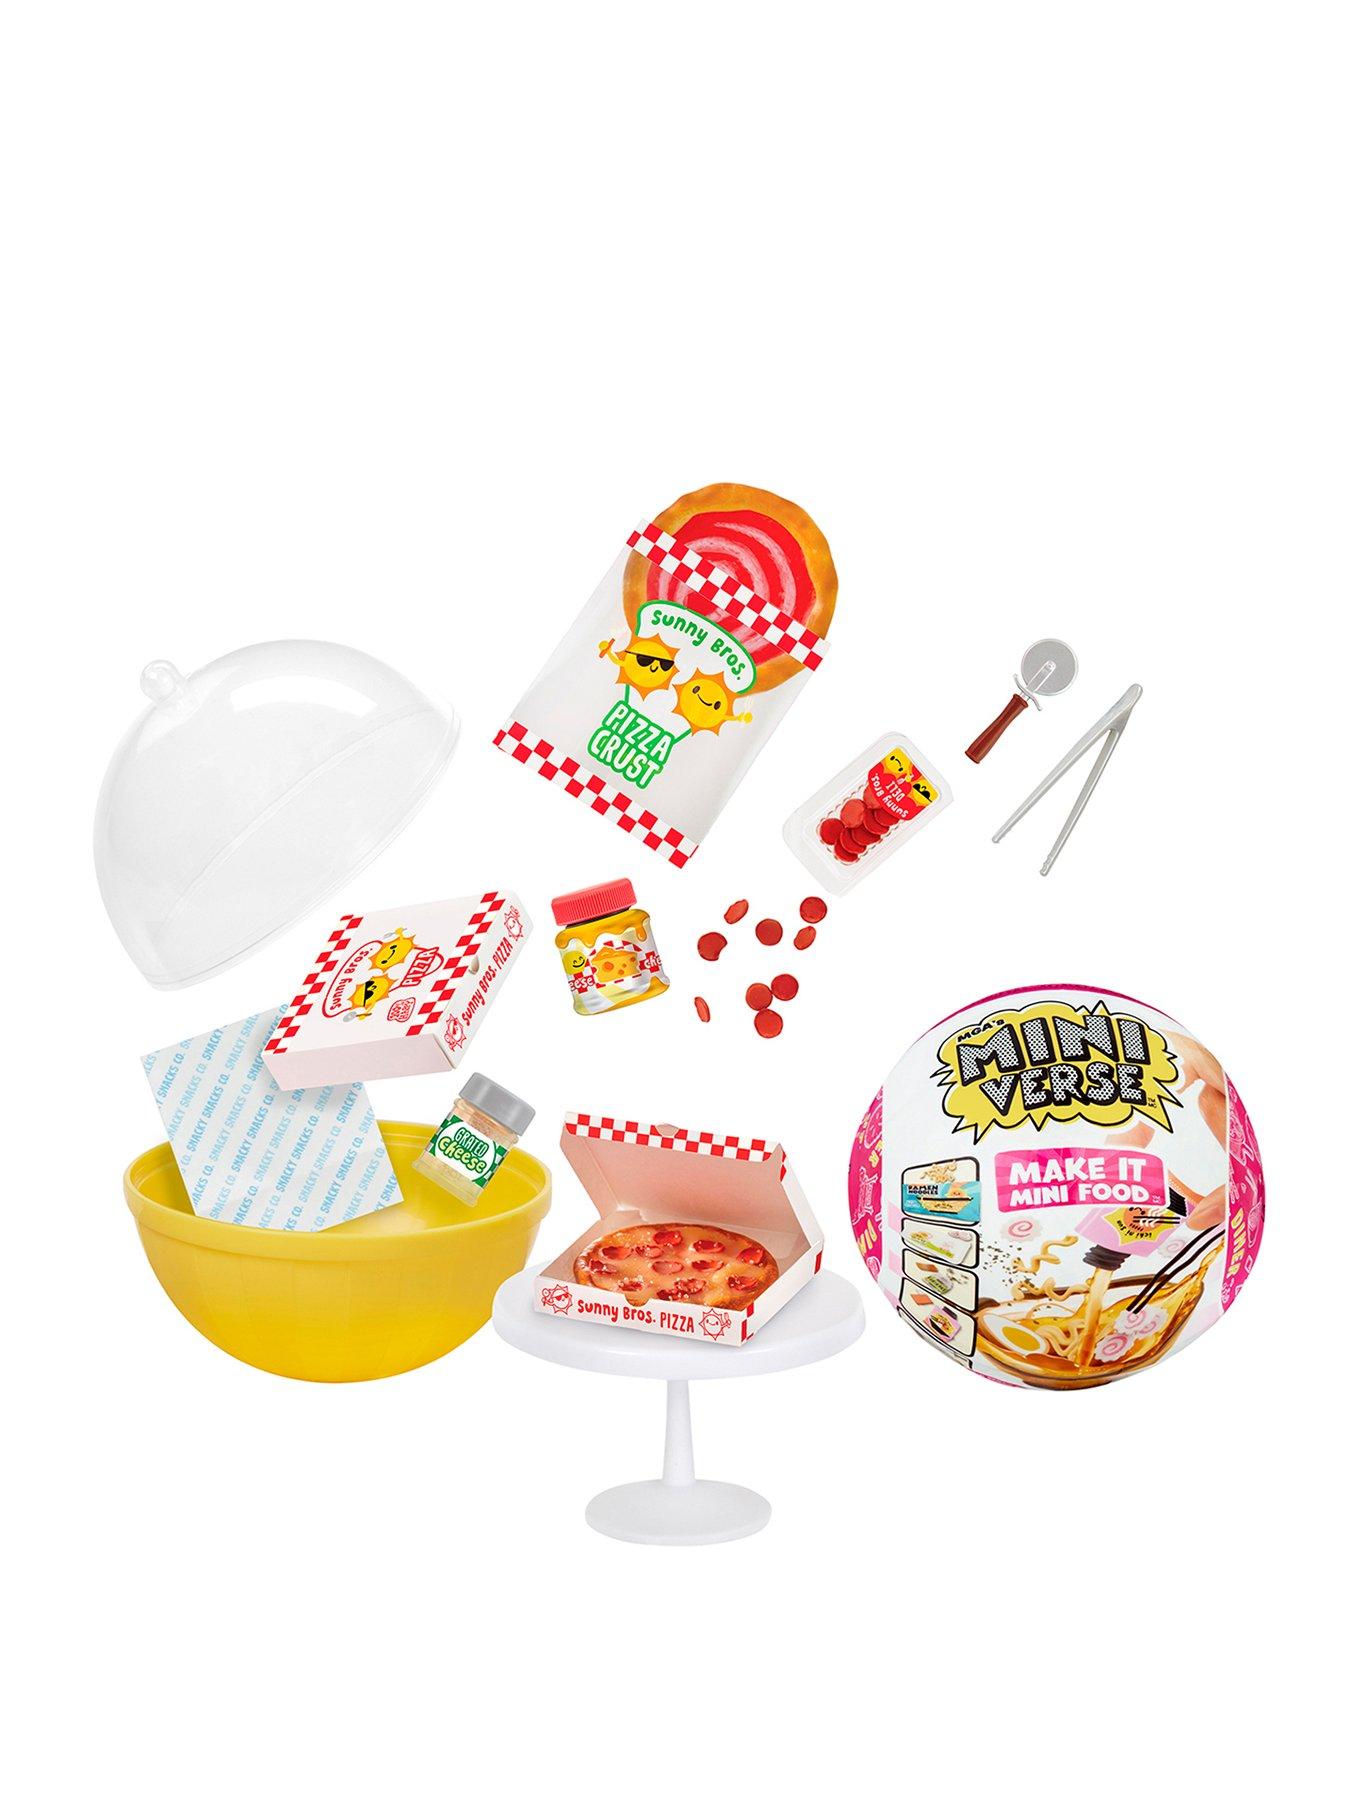 MGA Miniverse Make It Mini Food DINER SERIES 3 Craft Kits You Pick 